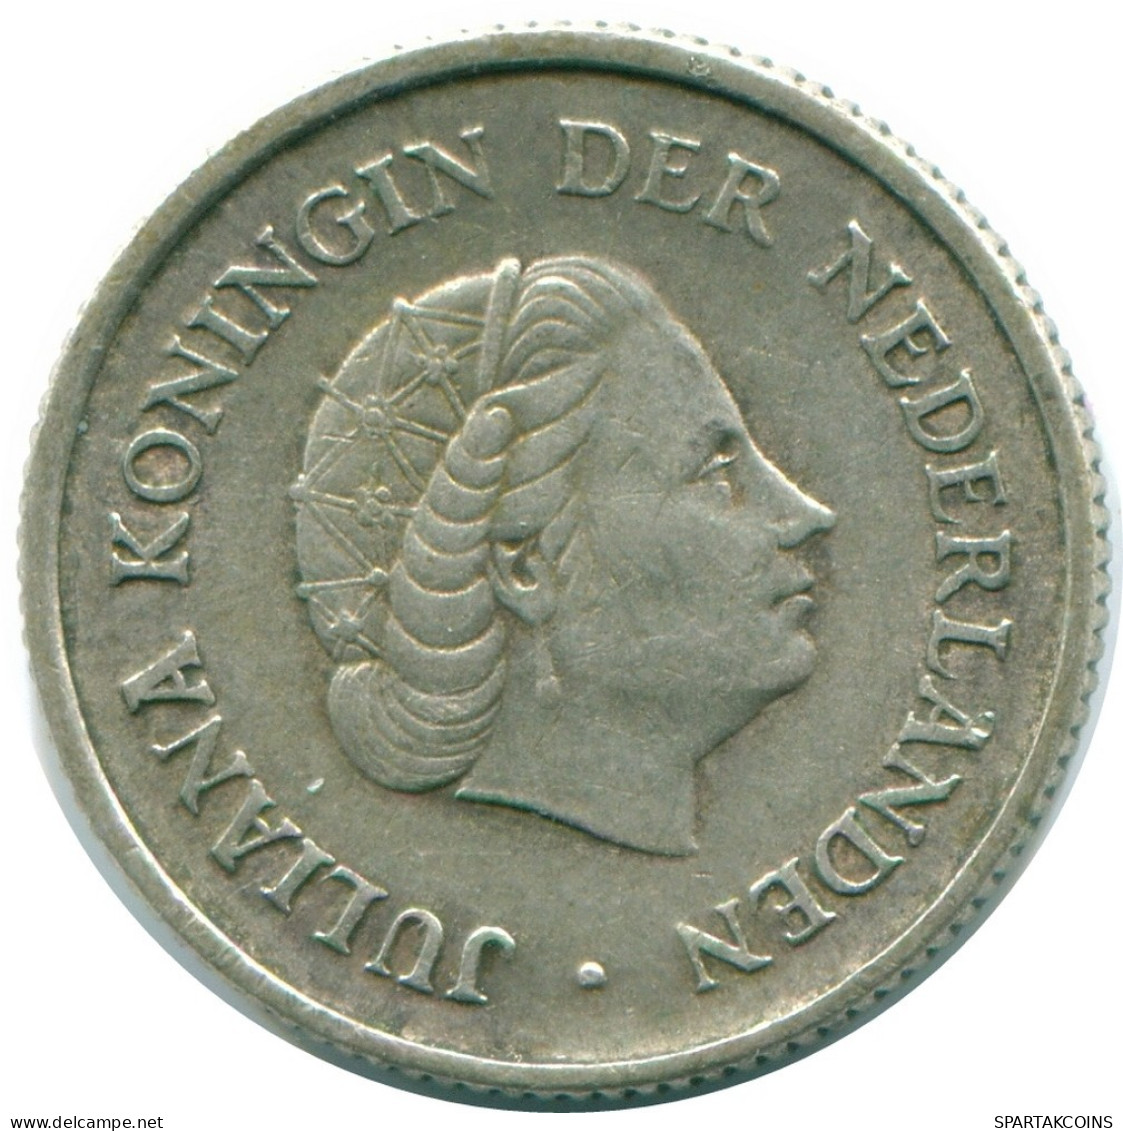 1/4 GULDEN 1965 NIEDERLÄNDISCHE ANTILLEN SILBER Koloniale Münze #NL11374.4.D.A - Nederlandse Antillen